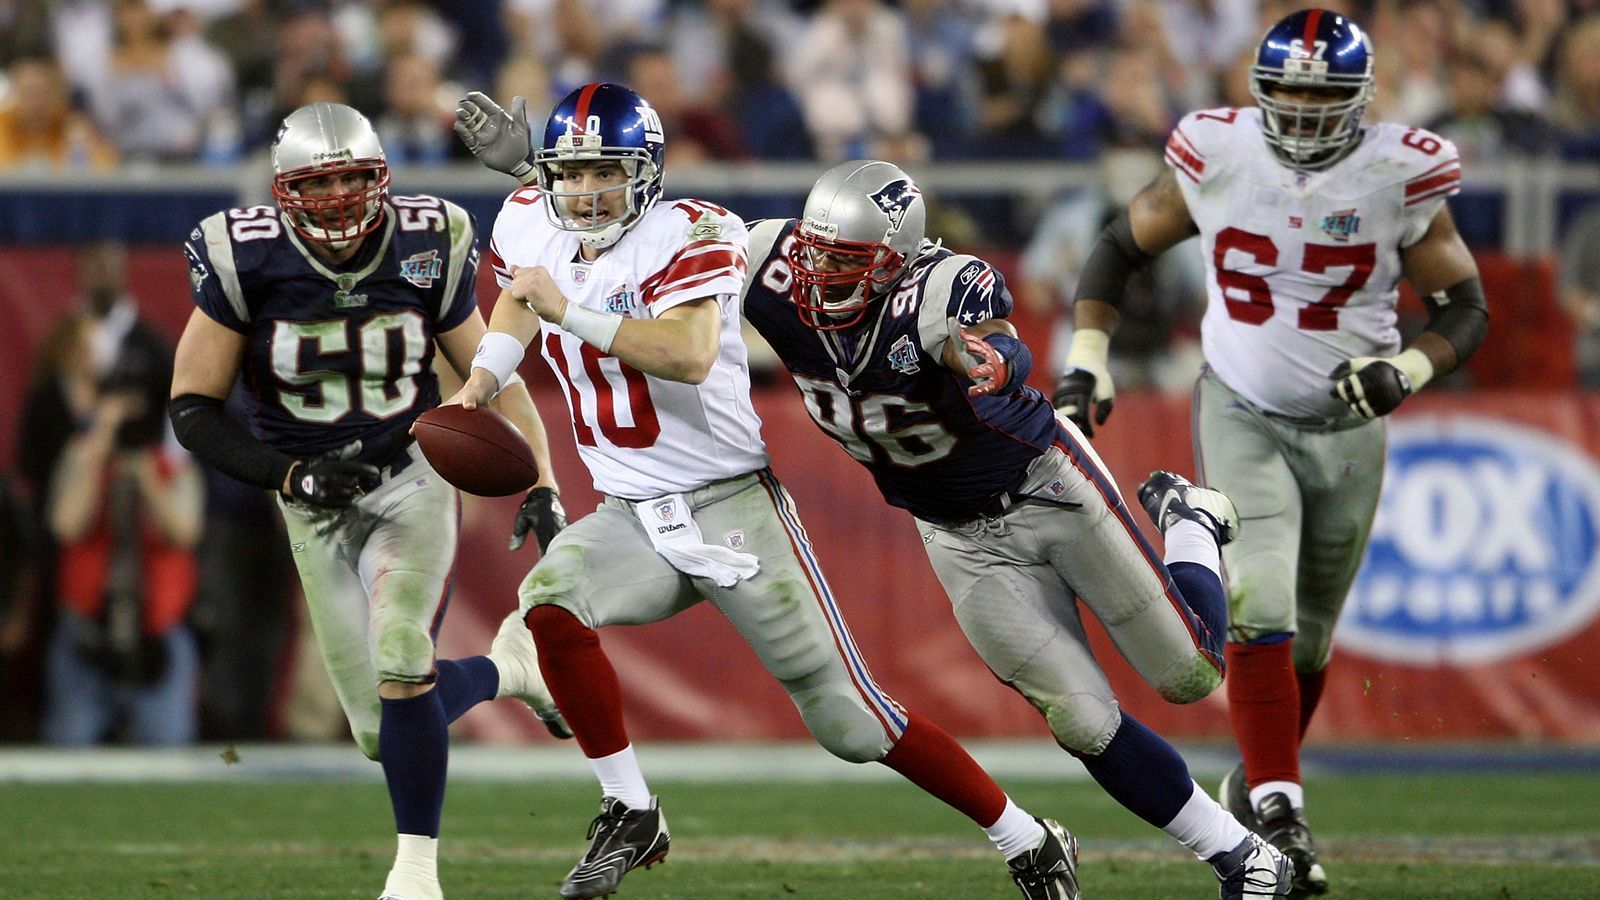 
                <strong>2008 - Super Bowl XLII - New York Giants</strong><br>
                2008 war wieder ein Mitglied aus der Manning-Dynastie dran - diesmal der jüngere Bruder. Quarterback Eli Manning von den New York Giants stahl seinem Gegenüber Tom Brady die Show und fügte den New England Patriots die erste Niederlage der Saison zu. 17:14 gewannen die "G-Men".
              